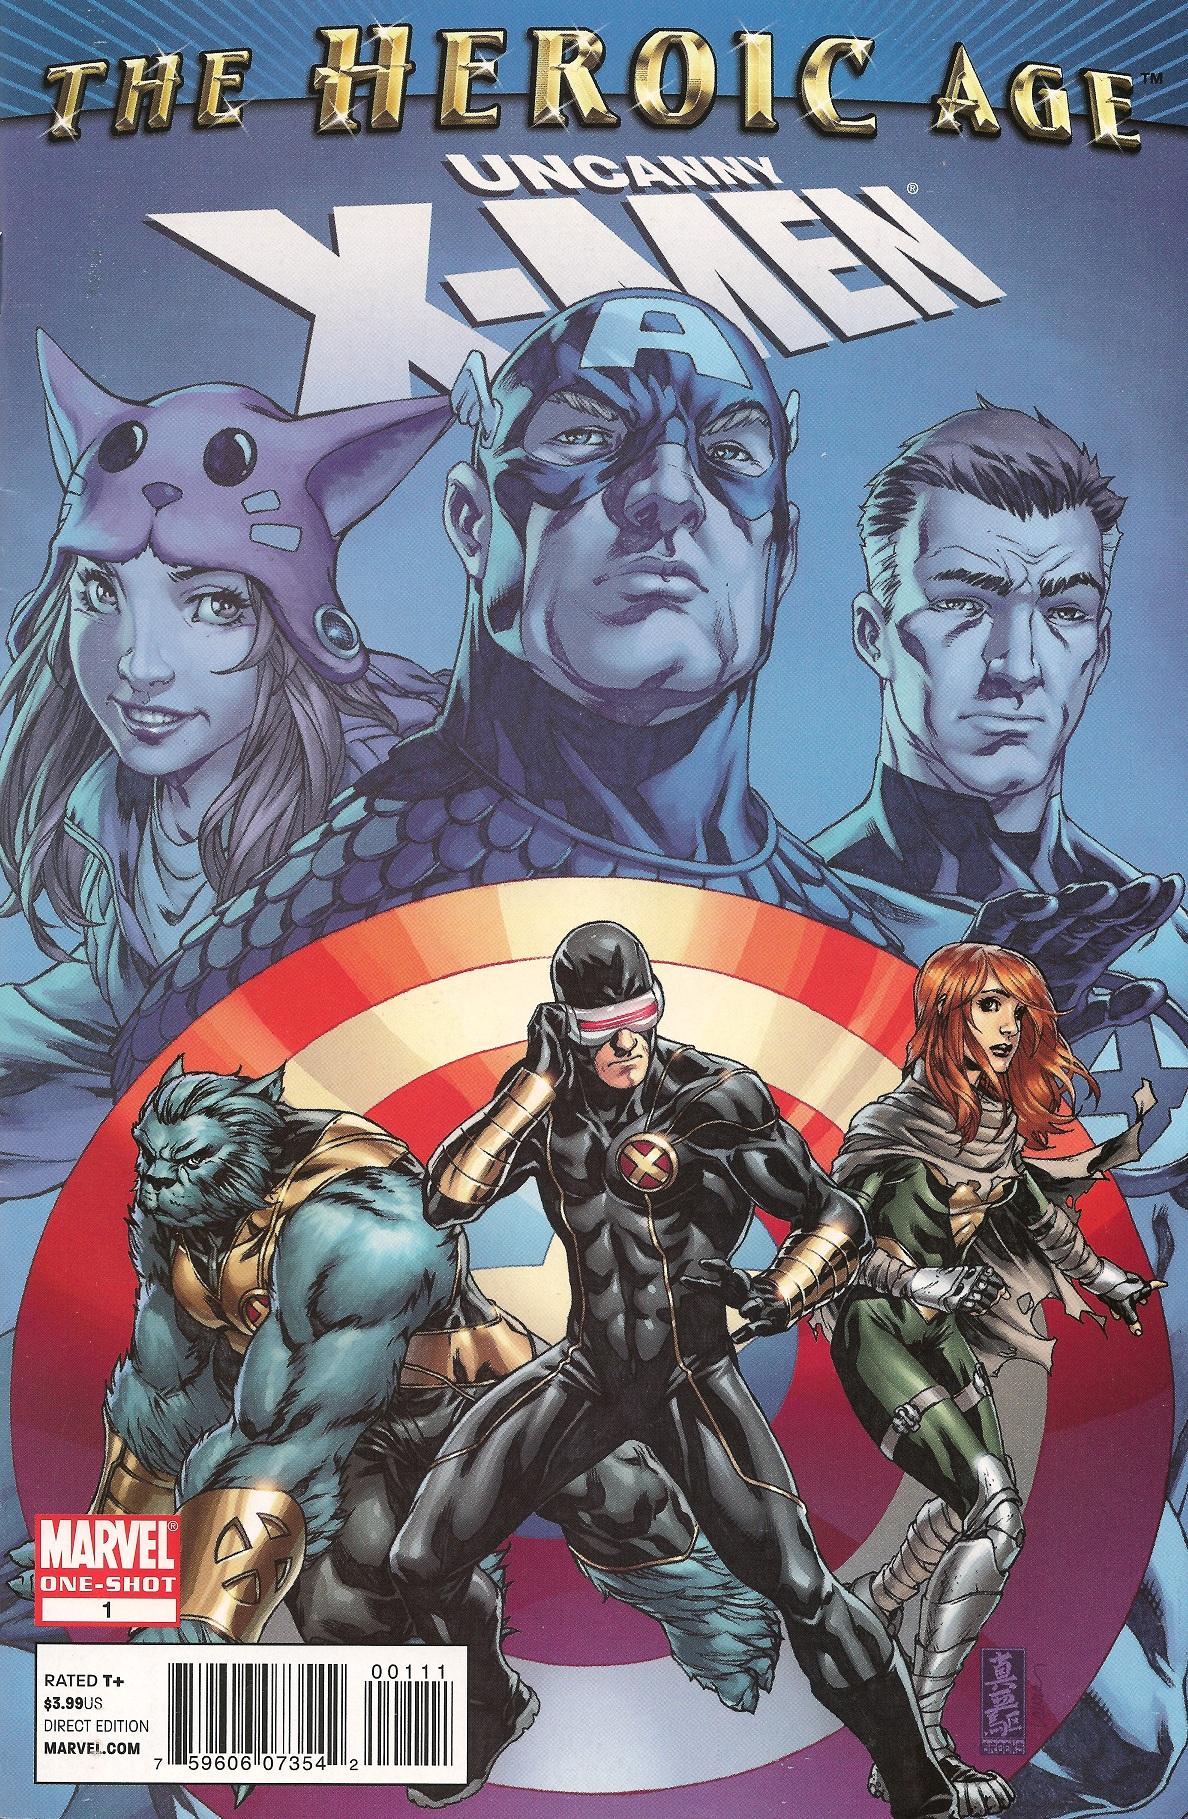 Uncanny X-Men: The Heroic Age Vol. 1 #1